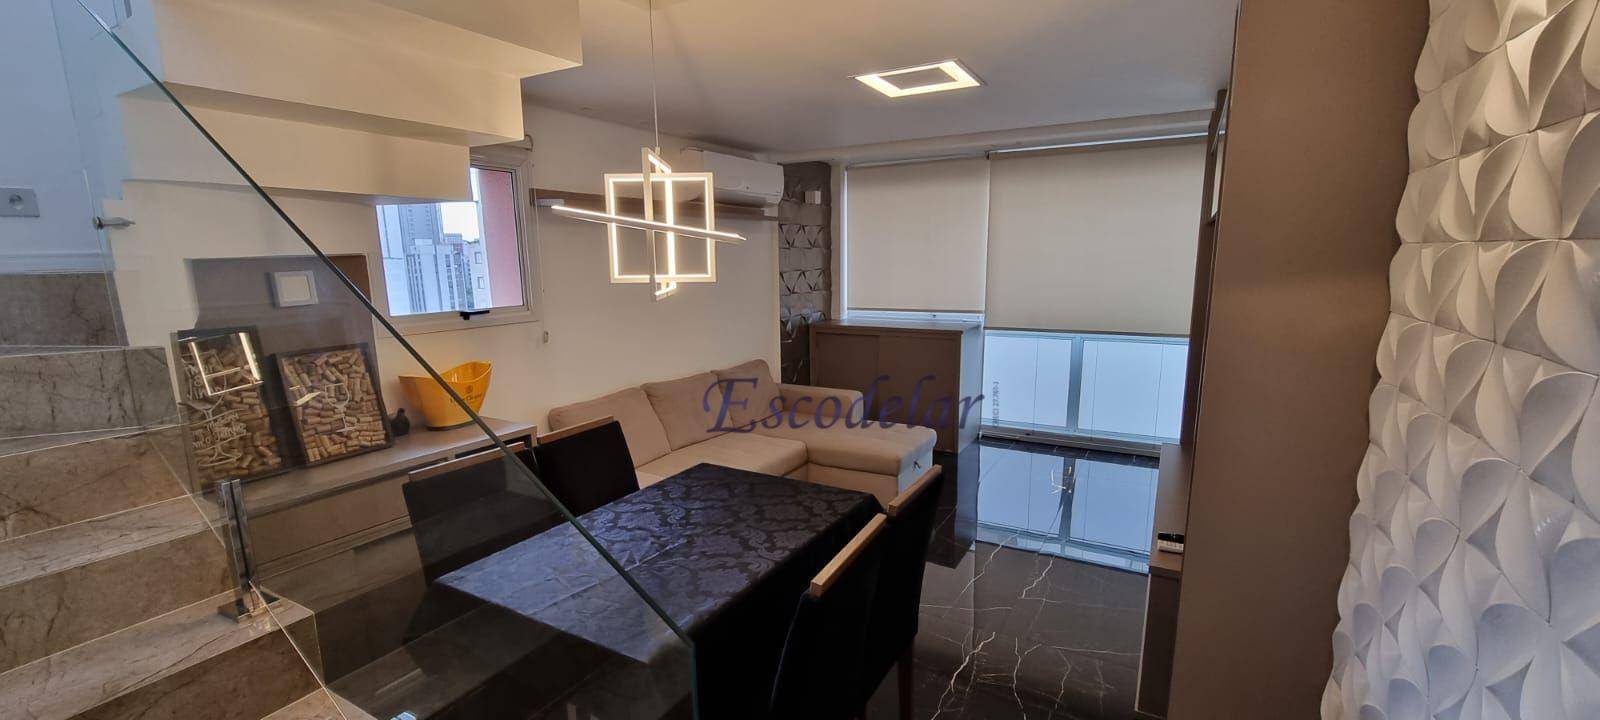 Apartamento com 2 dormitórios à venda, 73 m² por R$ 1.590.000,00 - Pinheiros - São Paulo/SP